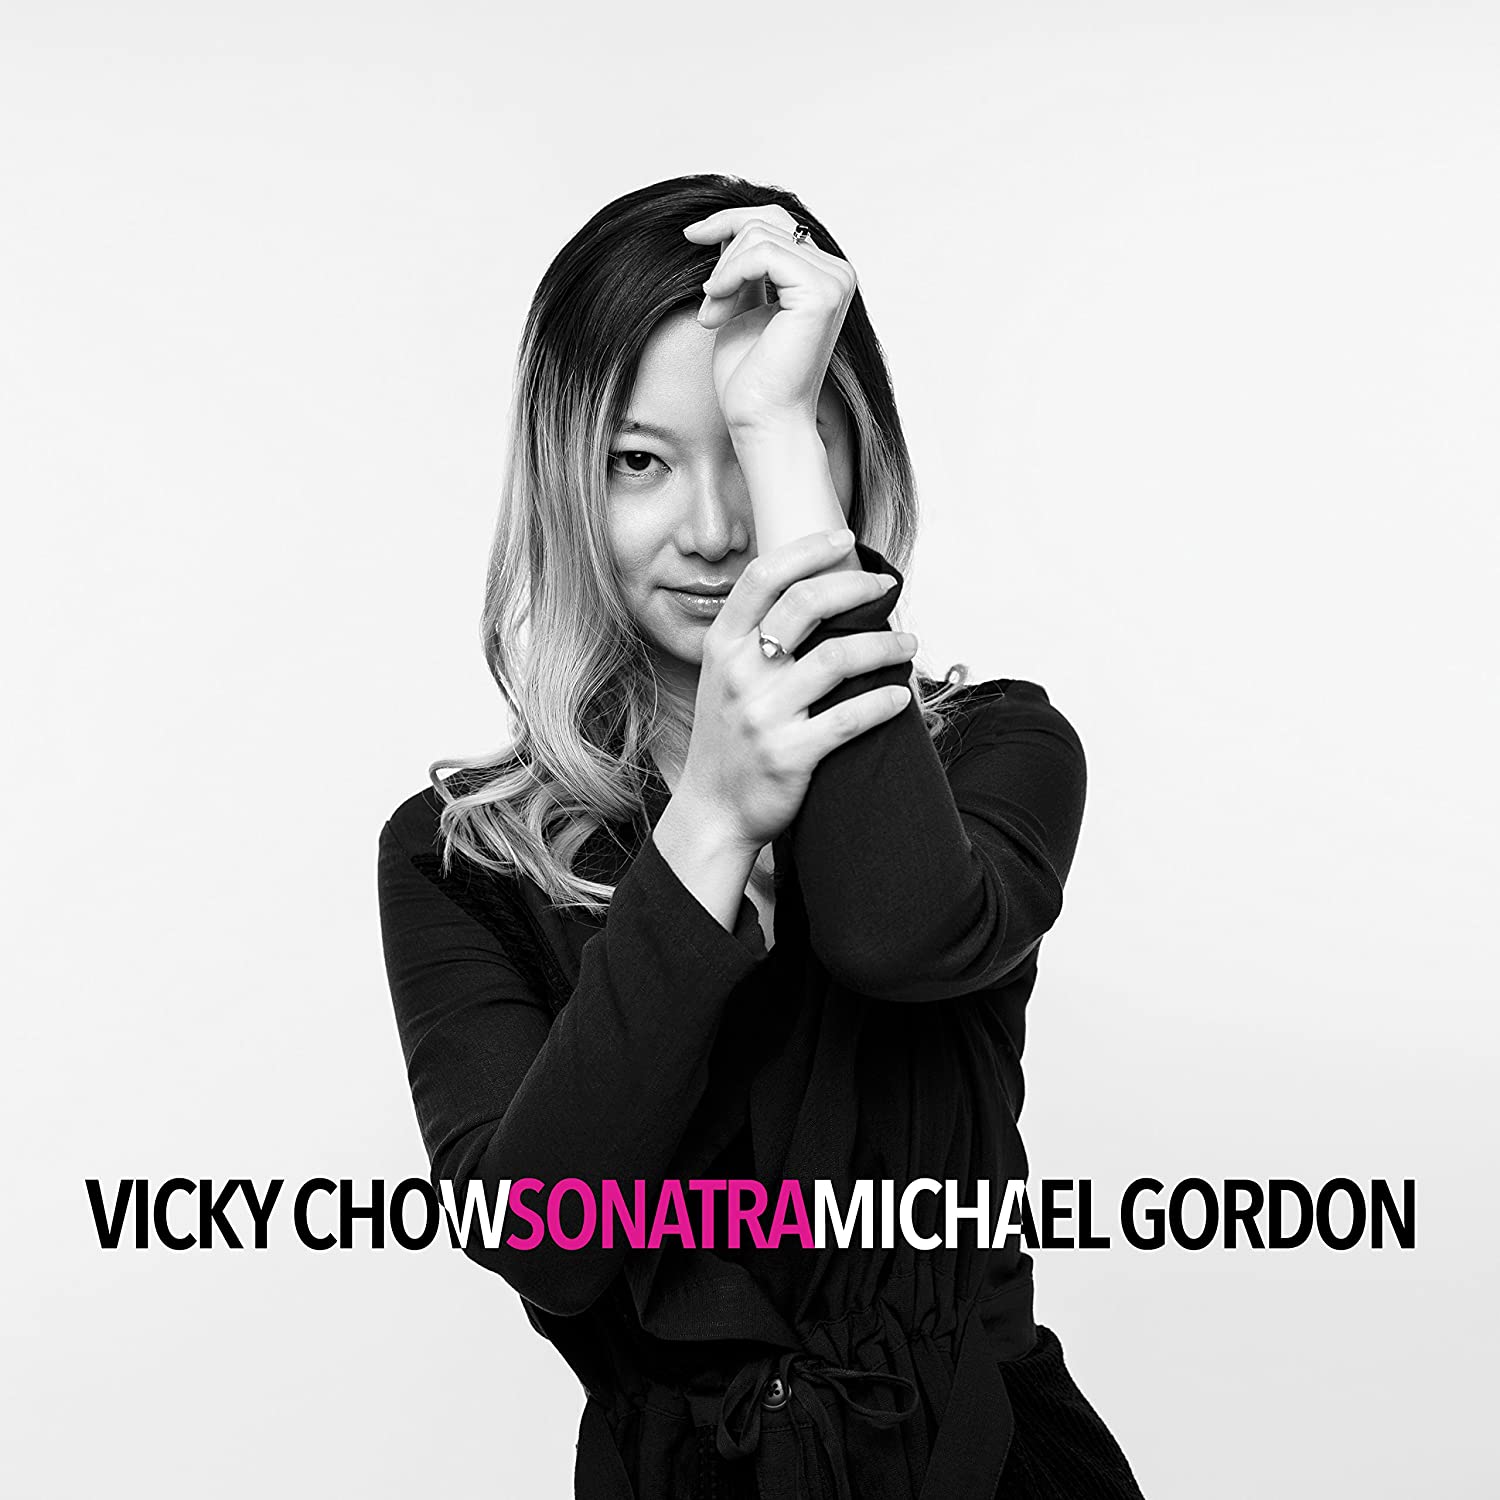 Michael Gordon & Vicky Chow - Sonatra